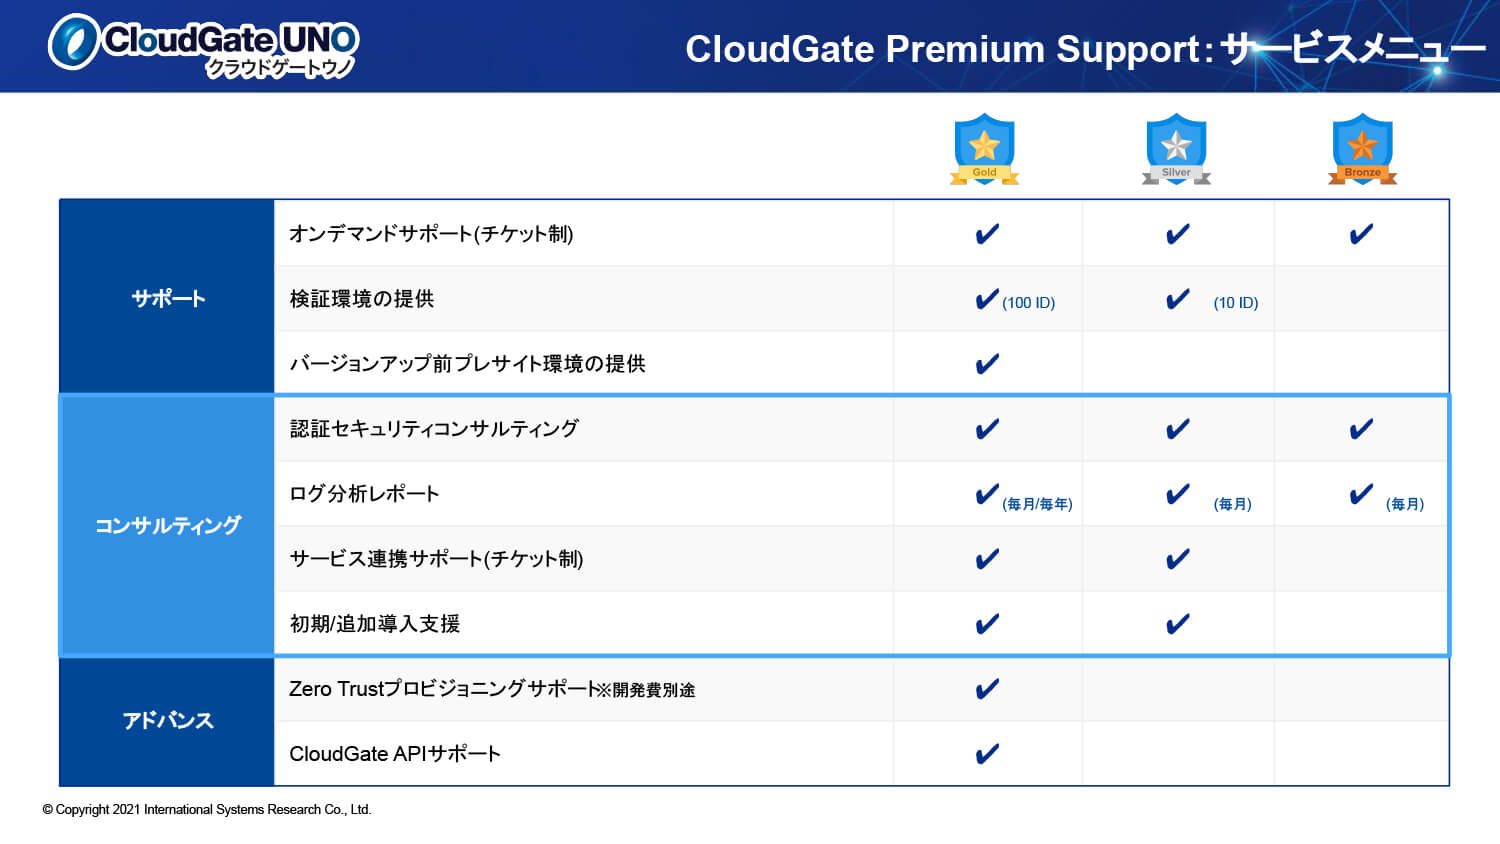 CloudGate Premium Support